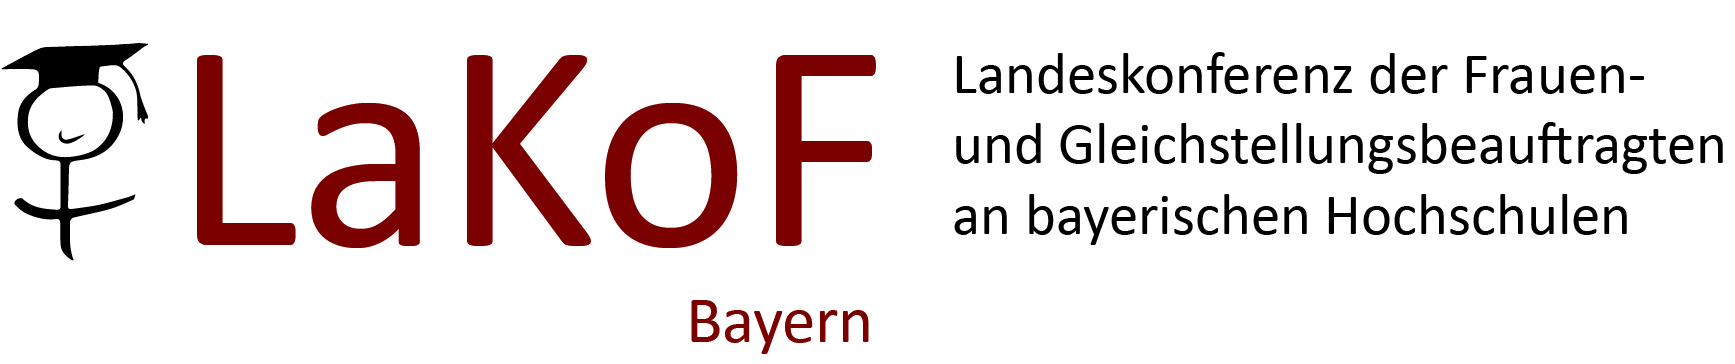 LaKoF Bayern Landeskonferenz der Frauen- und Gleichstellungsbeauftragten an bayerischen Hochschulen